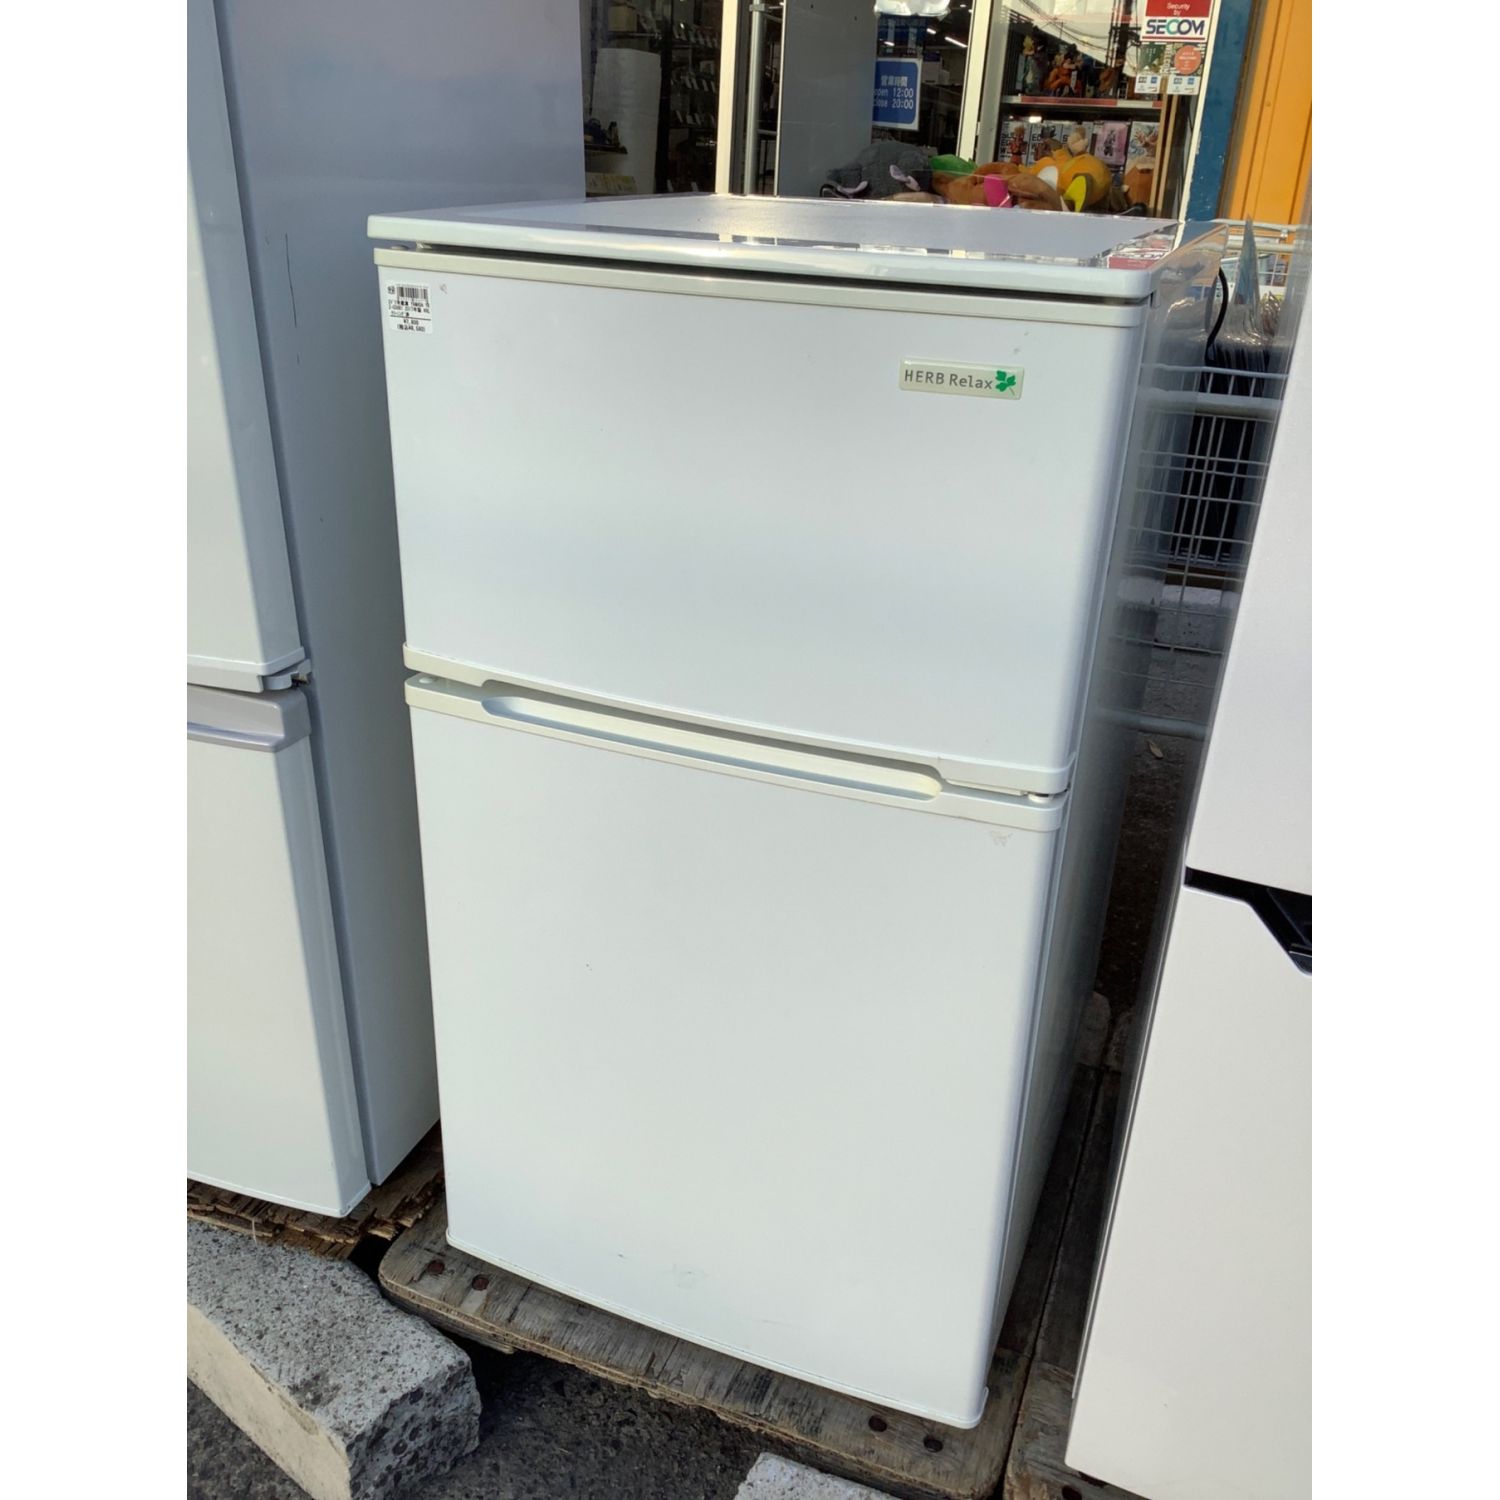 YAMADA (ヤマダ) 2ドア冷蔵庫 YRZ-C09B1 2017年製 90L クリーニング済